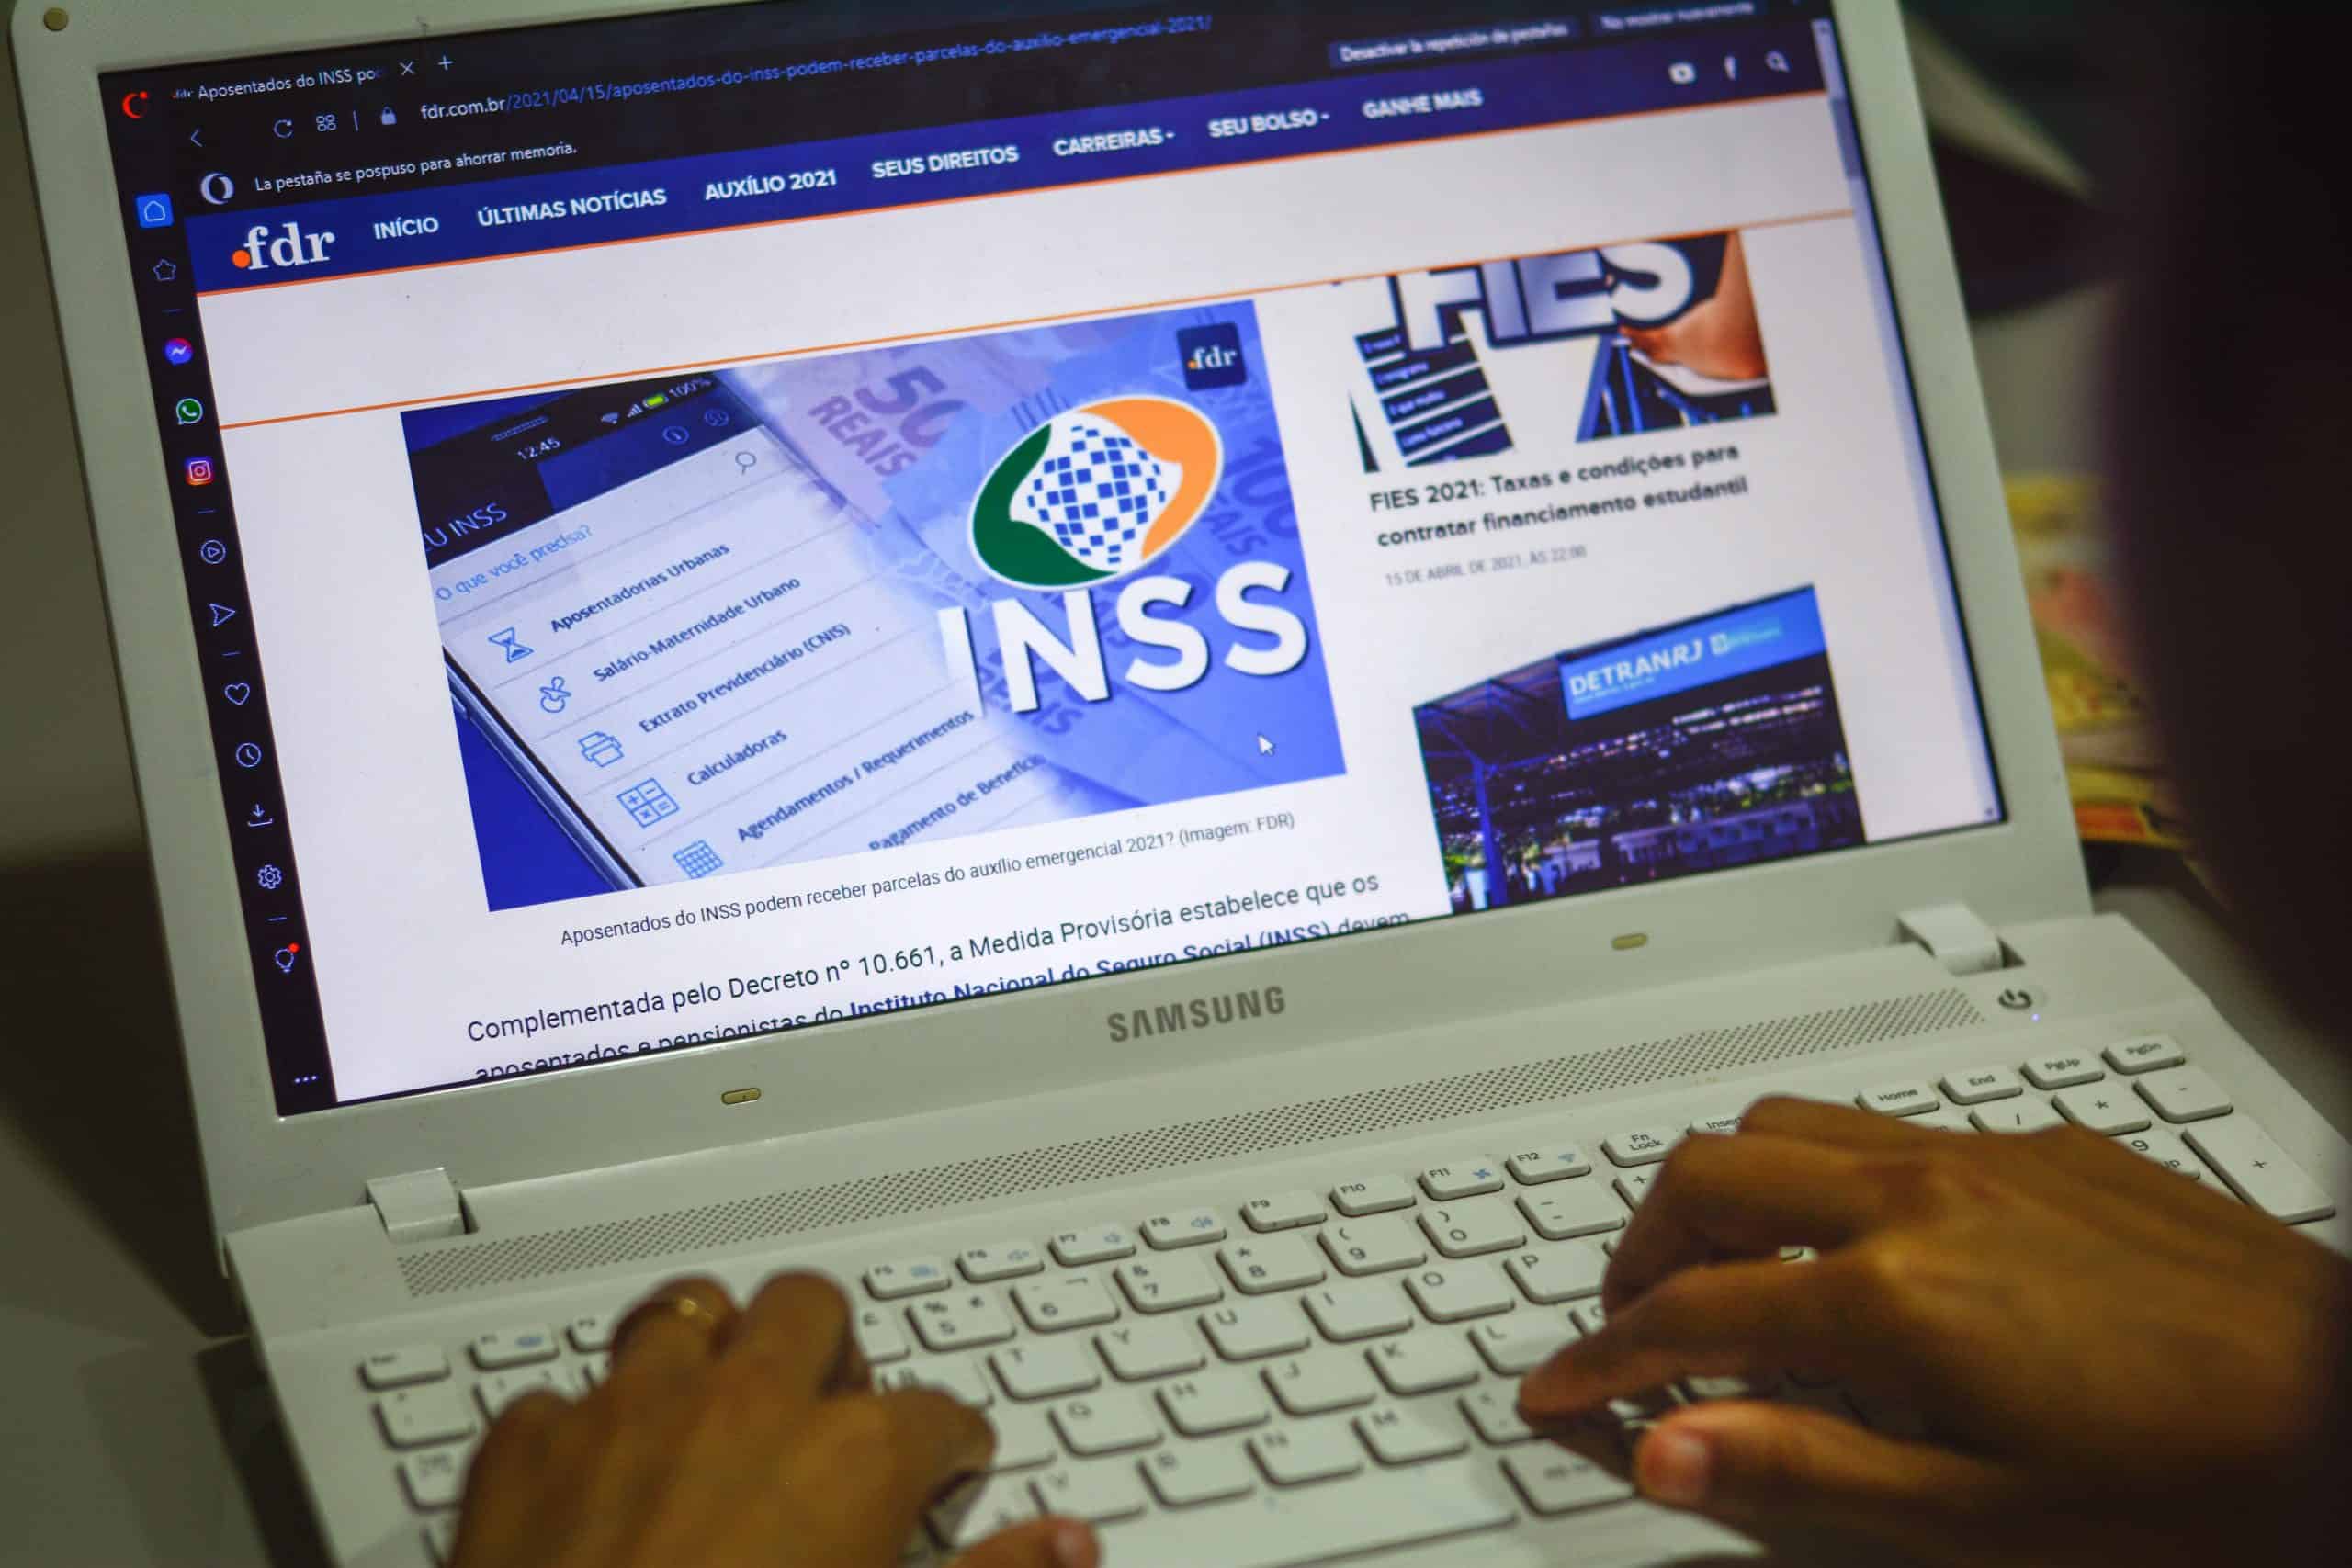 Advogado explica como você pode contestar os atrasos do INSS e receber com juros (Imagem: Marcos Rocha/ FDR)